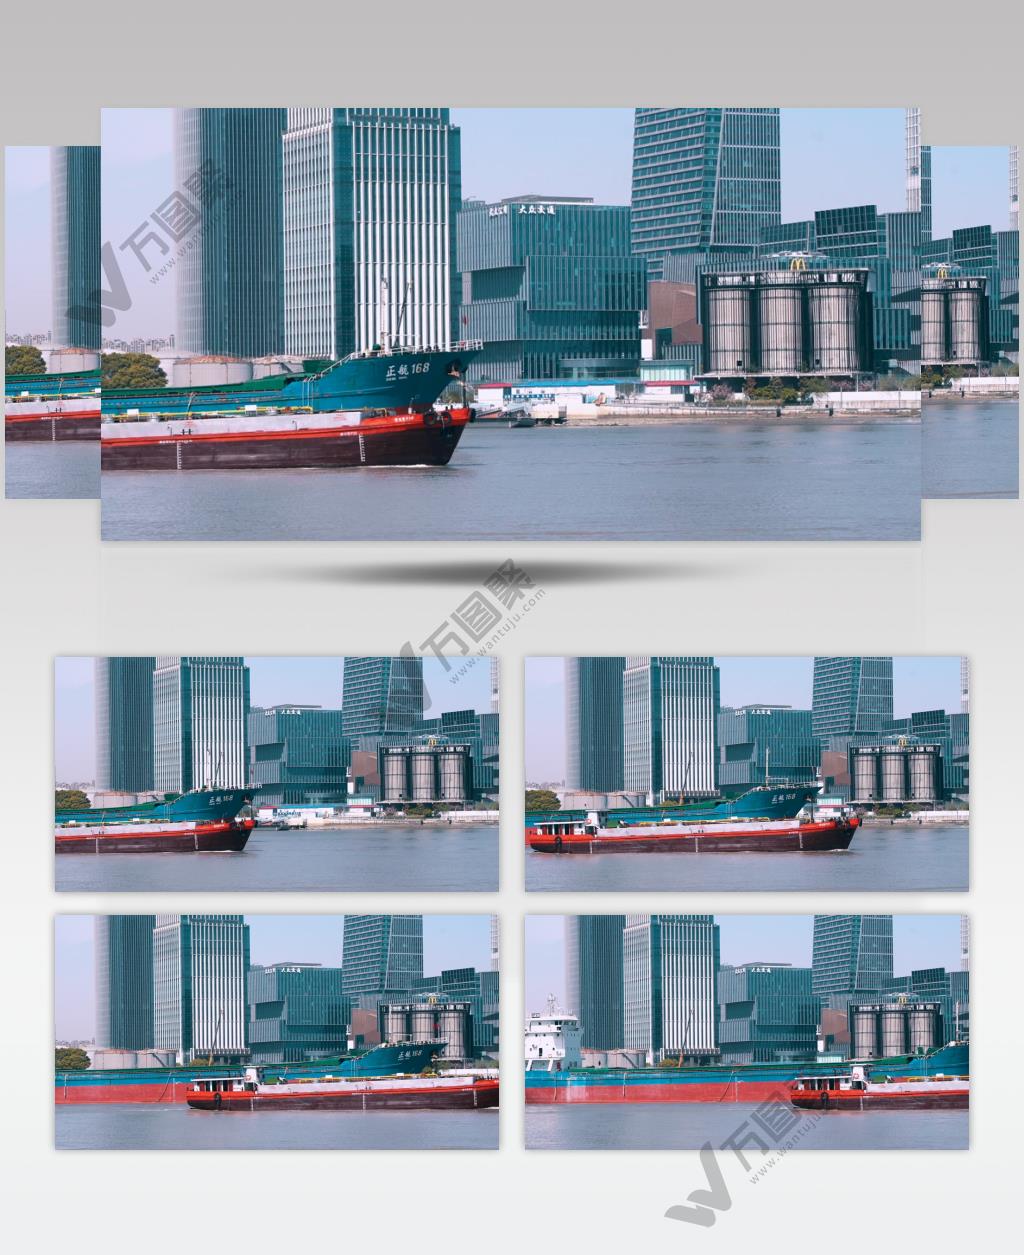 上海黄浦江货轮在行驶中4K